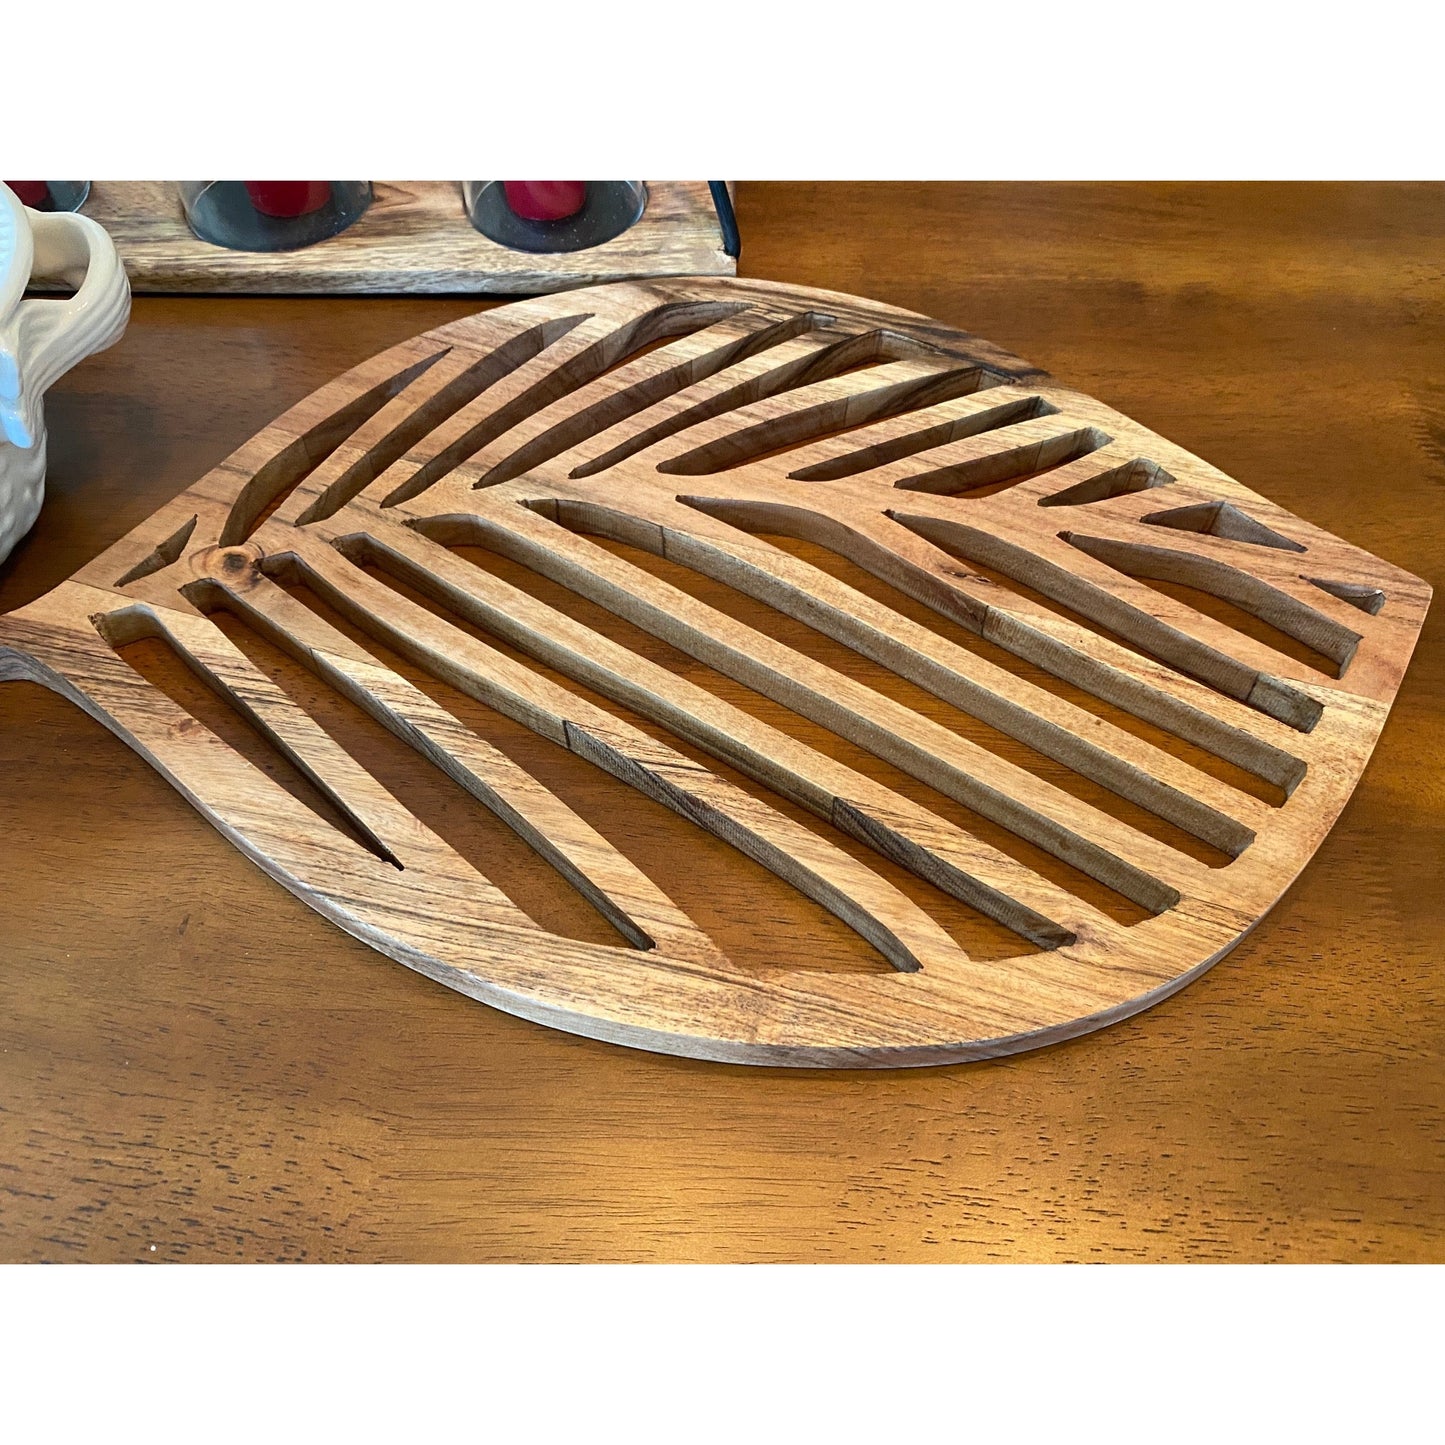 Park Designs Leaf Wood Charger Plate Elegant Design